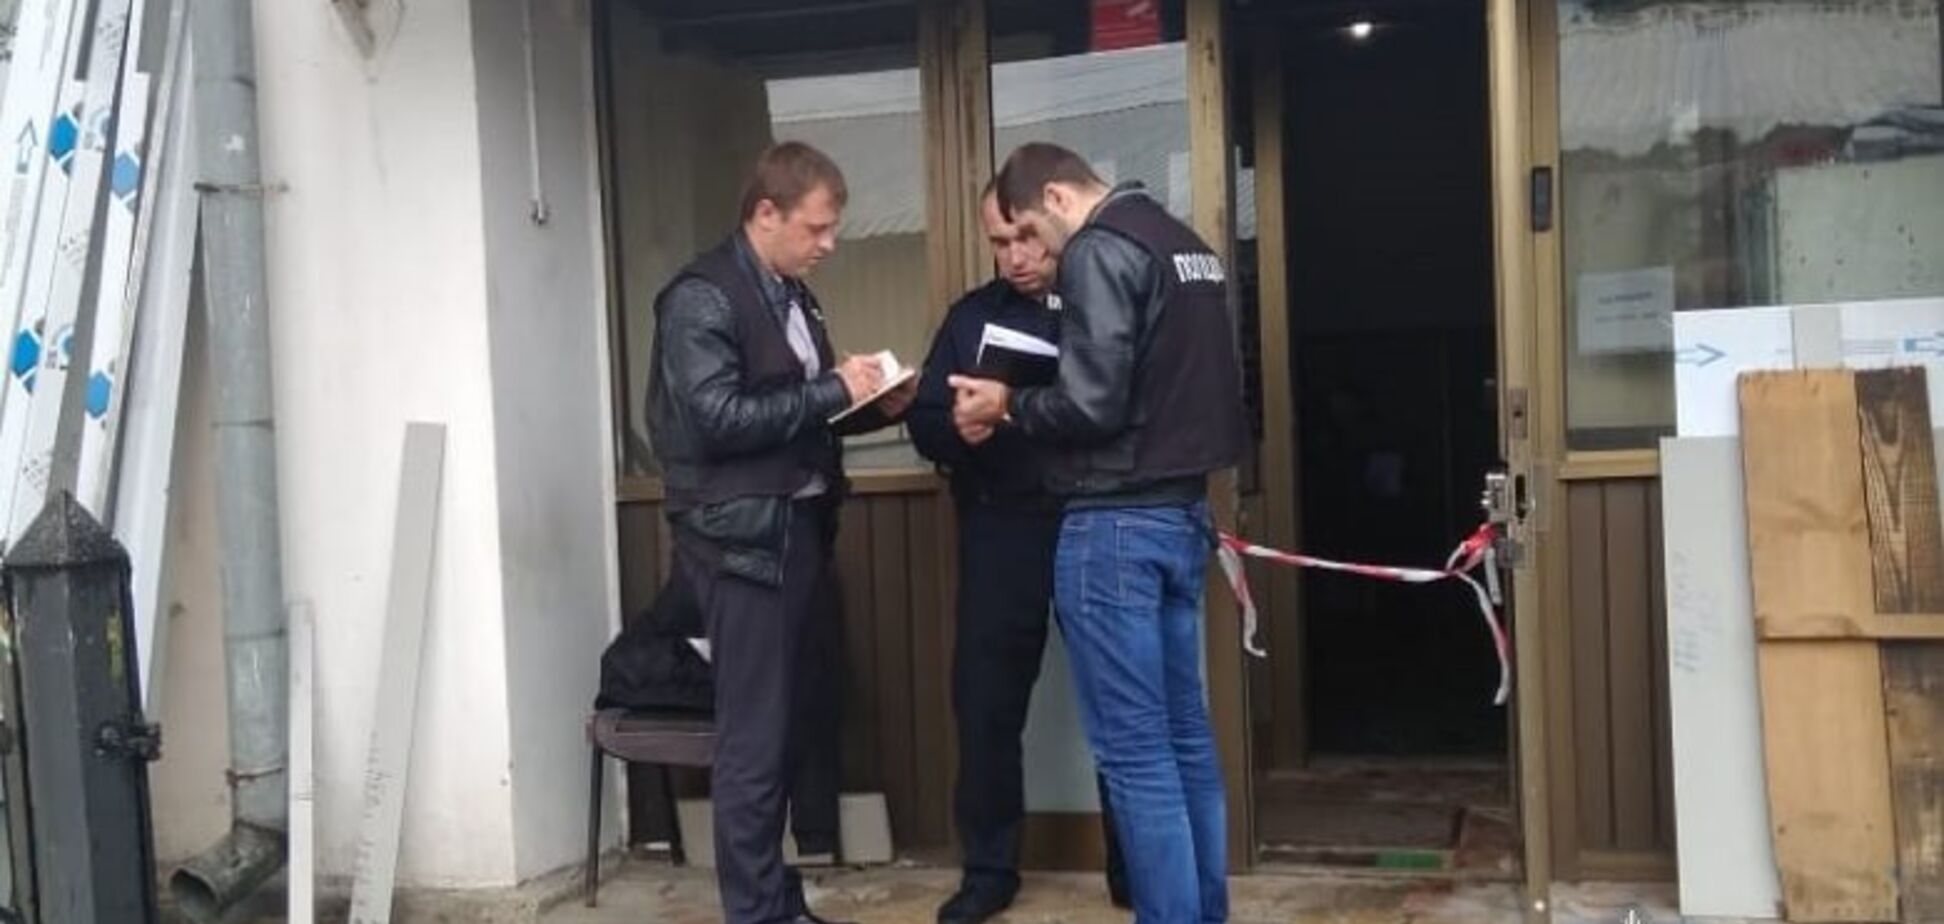 У Києві в офісі сталася стрілянина: є поранені